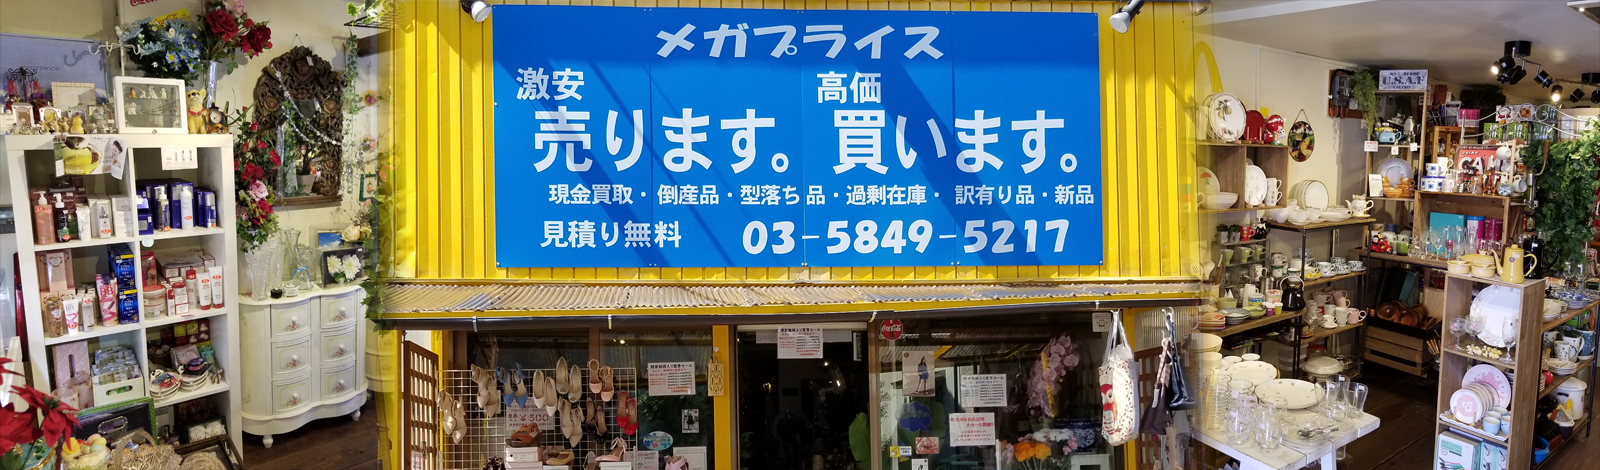 東京都足立区で激安現金問屋をやっておりますメガプライスです。